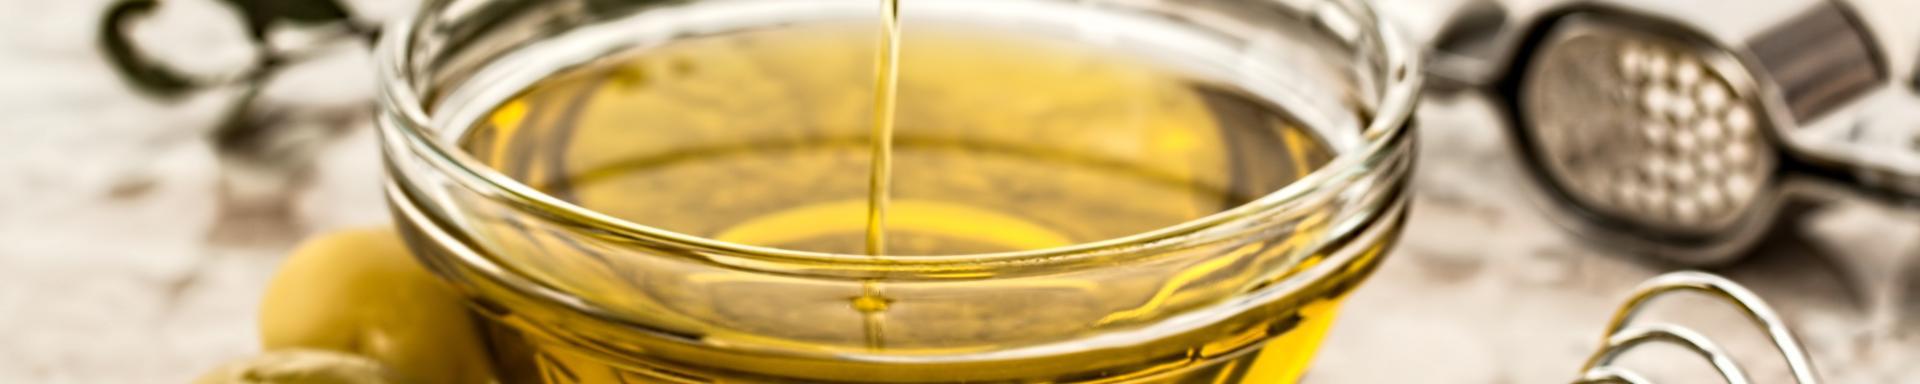 Beneficios del aceite de Oliva para la piel